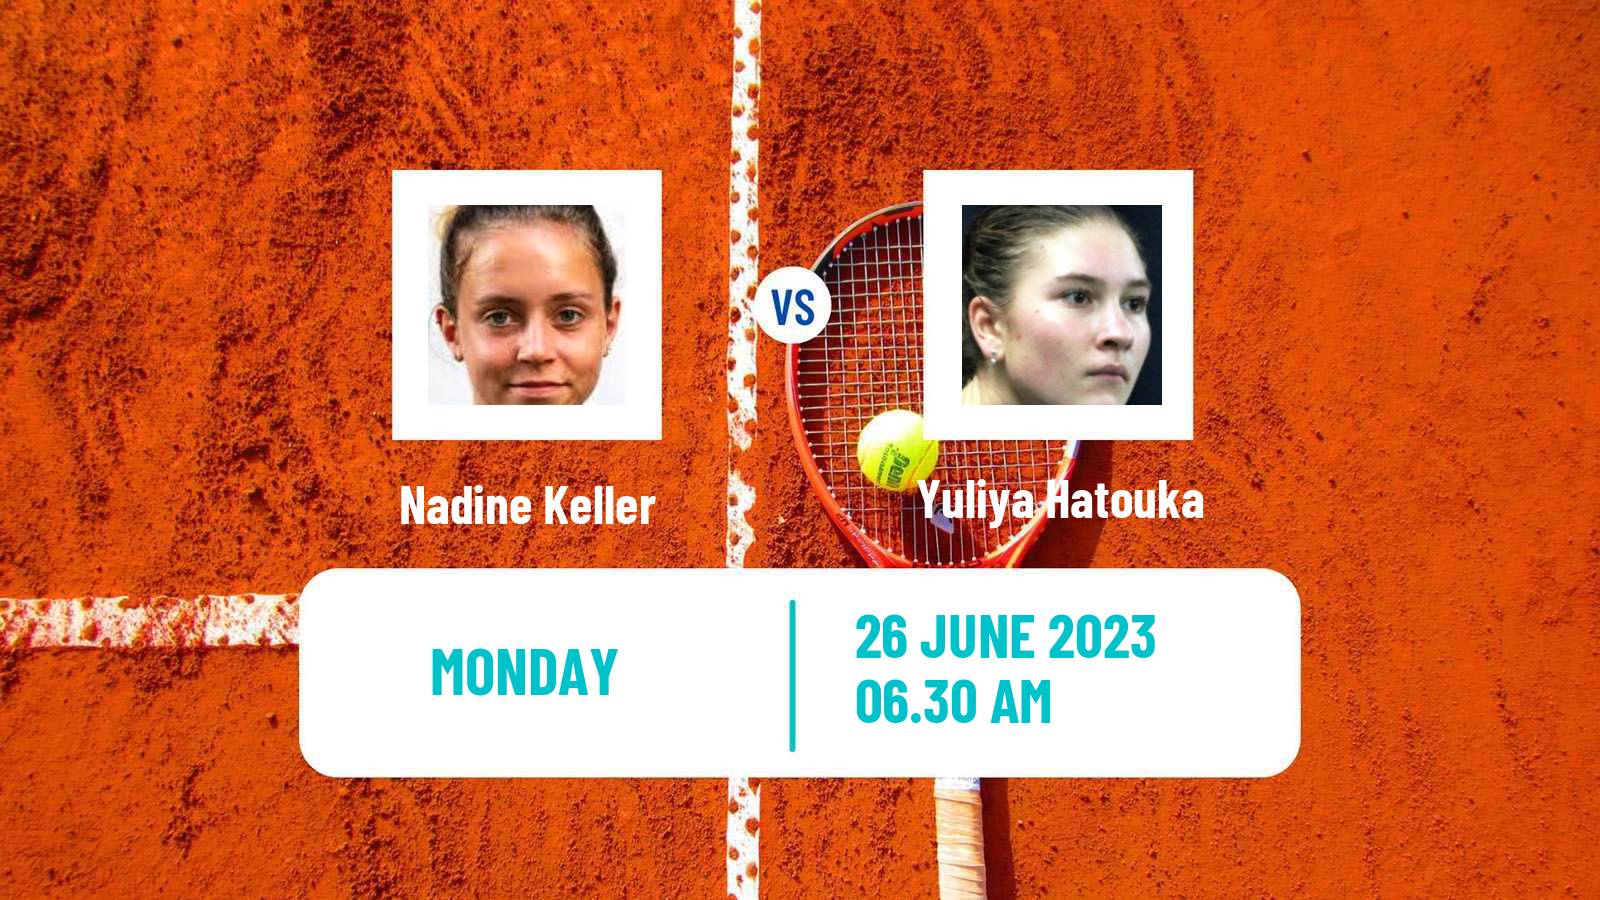 Tennis ITF W25 Tarvisio Women Nadine Keller - Yuliya Hatouka